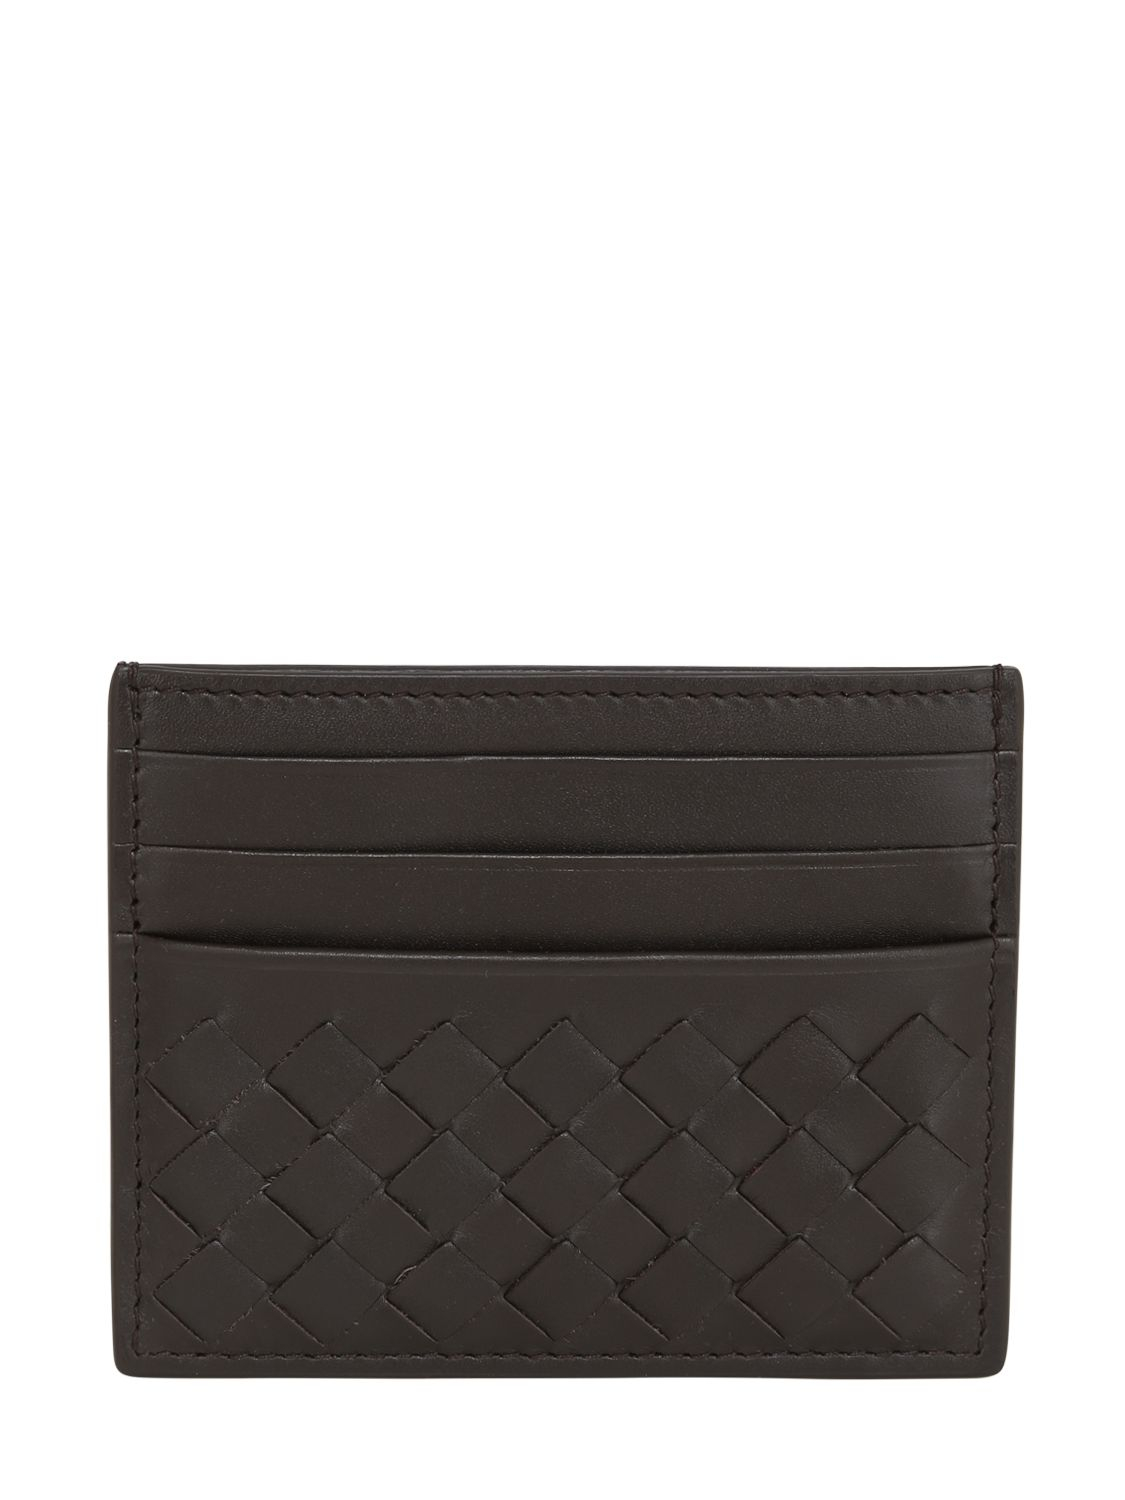 Lyst - Bottega Veneta Intrecciato Leather Card Holder in Brown for Men